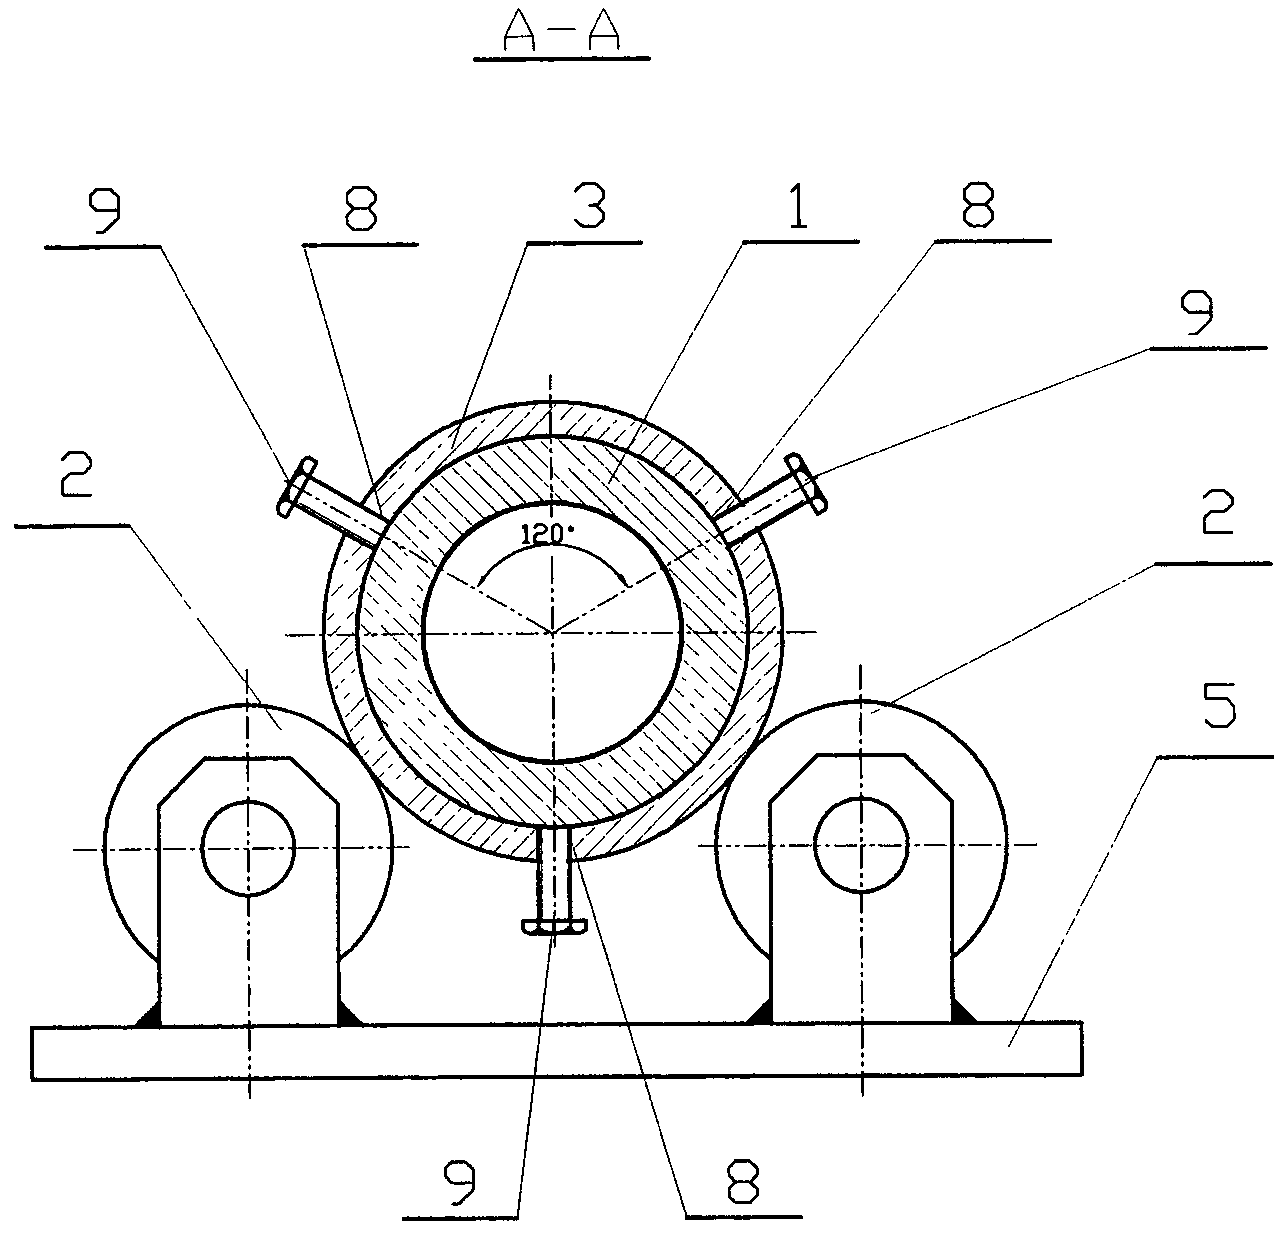 Novel assembling and welding process of spiral shaft of high-weir type double-spiral classifier